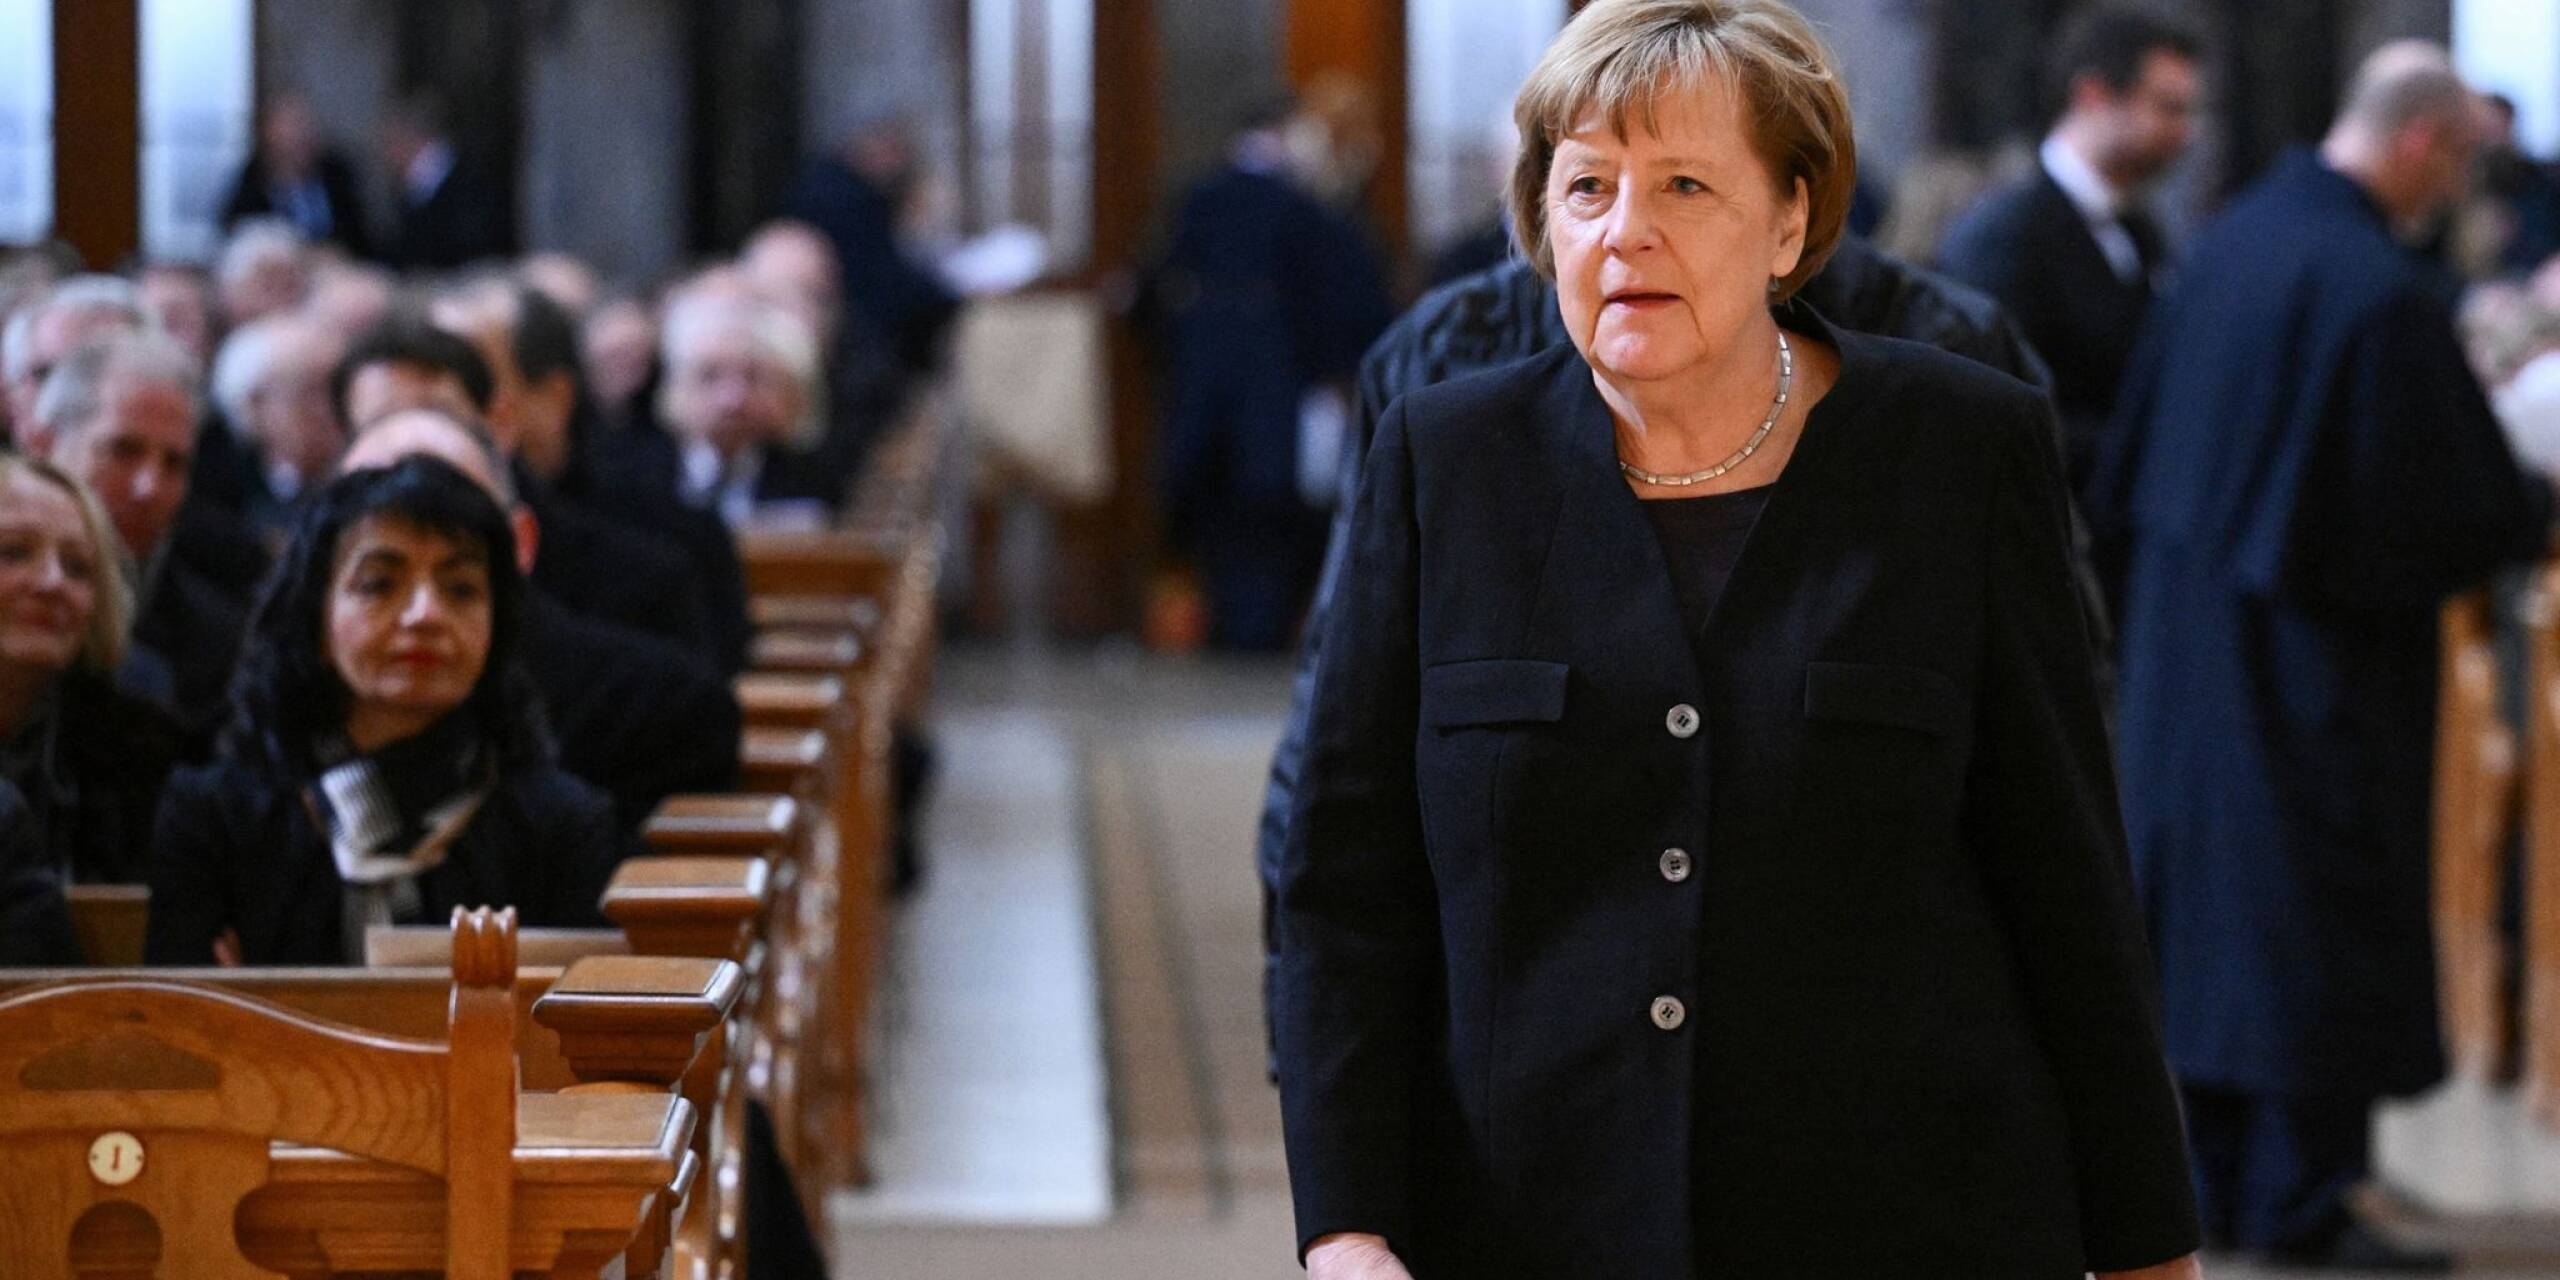 Zu Ehren von Wolfgang Schäuble, der am zweiten Weihnachtstag verstorben ist, findet in Berlin ein Trauerstaatsakt statt. Zum Gedenkgottesdienst im Berliner Dom erschien auch die ehemalige Bundeskanzlerin Angela Merkel.